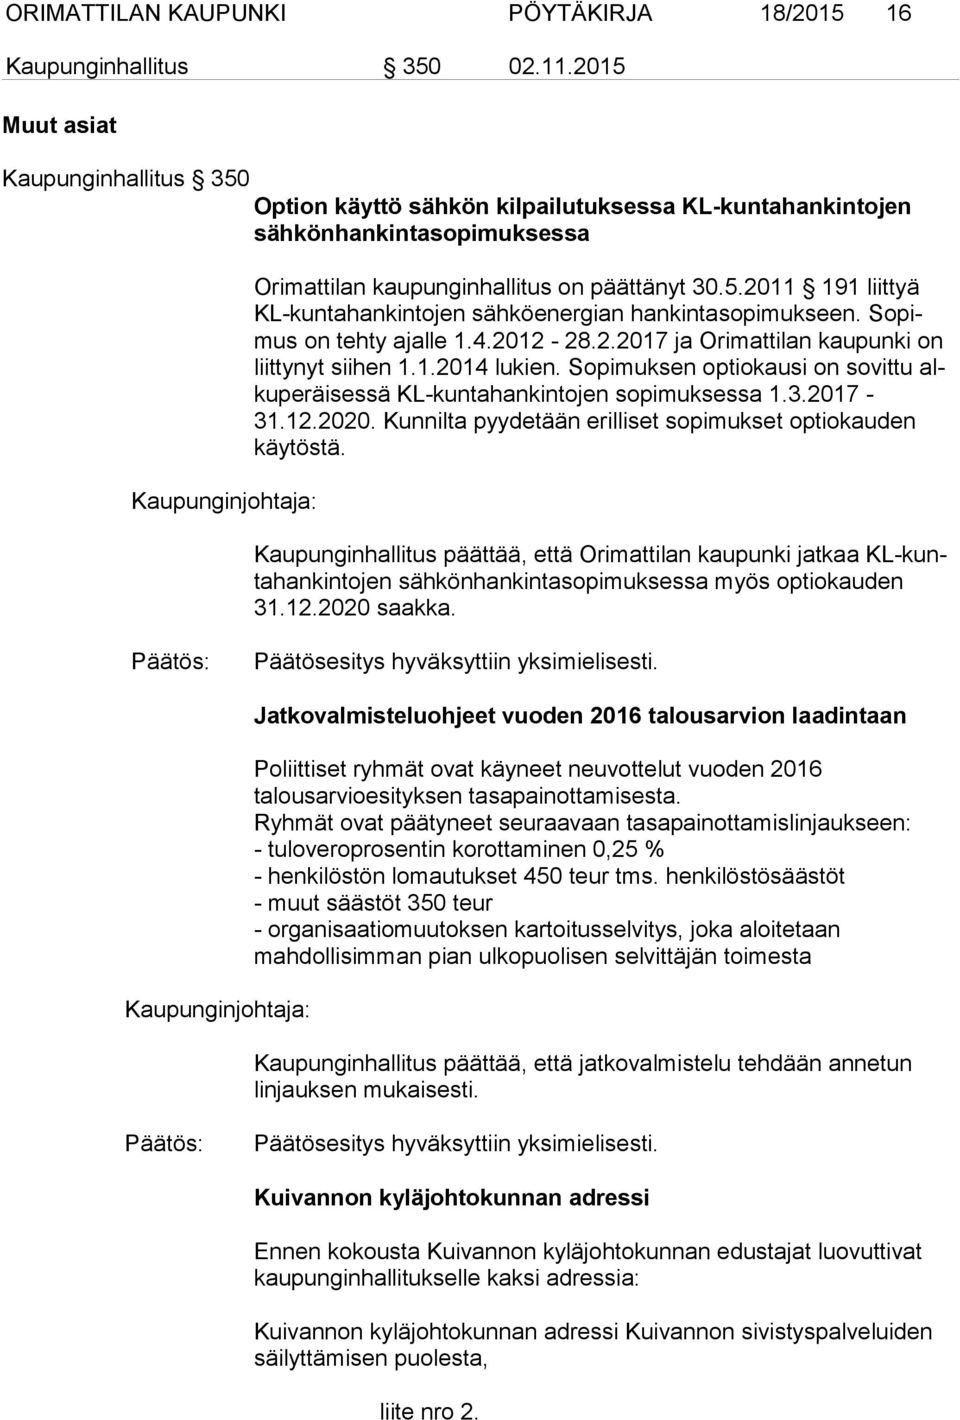 So pimus on tehty ajalle 1.4.2012-28.2.2017 ja Orimattilan kaupunki on liit ty nyt siihen 1.1.2014 lukien. Sopimuksen optiokausi on sovittu alku pe räi ses sä KL-kuntahankintojen sopimuksessa 1.3.